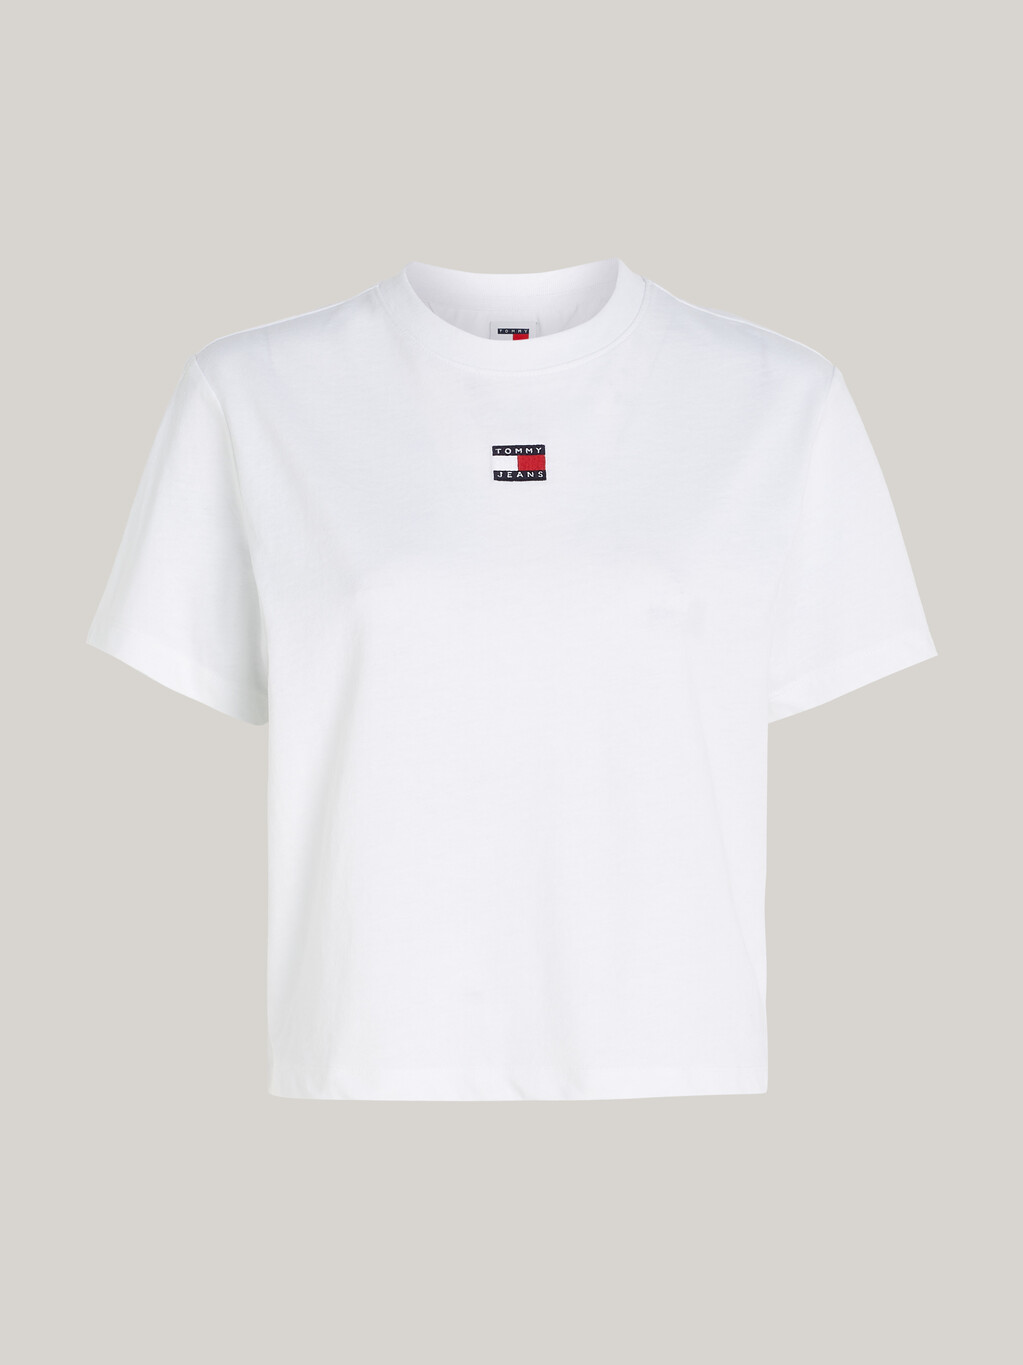 徽章經典寬鬆平紋 T 恤, White, hi-res